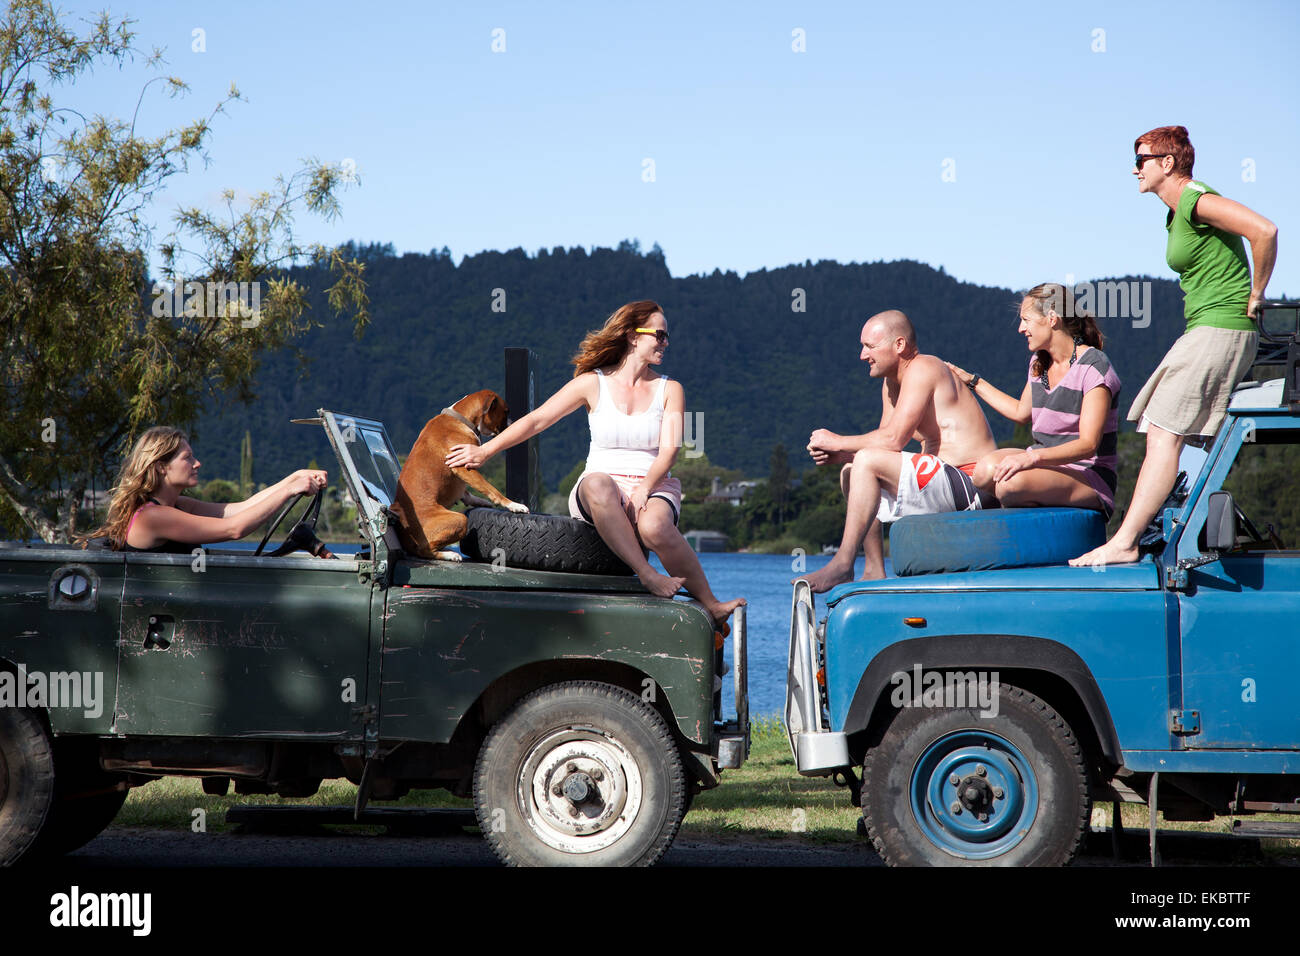 Amigos adultos conversando en la parte superior de vehículos off road, Lake Okareka, Nueva Zelanda Foto de stock